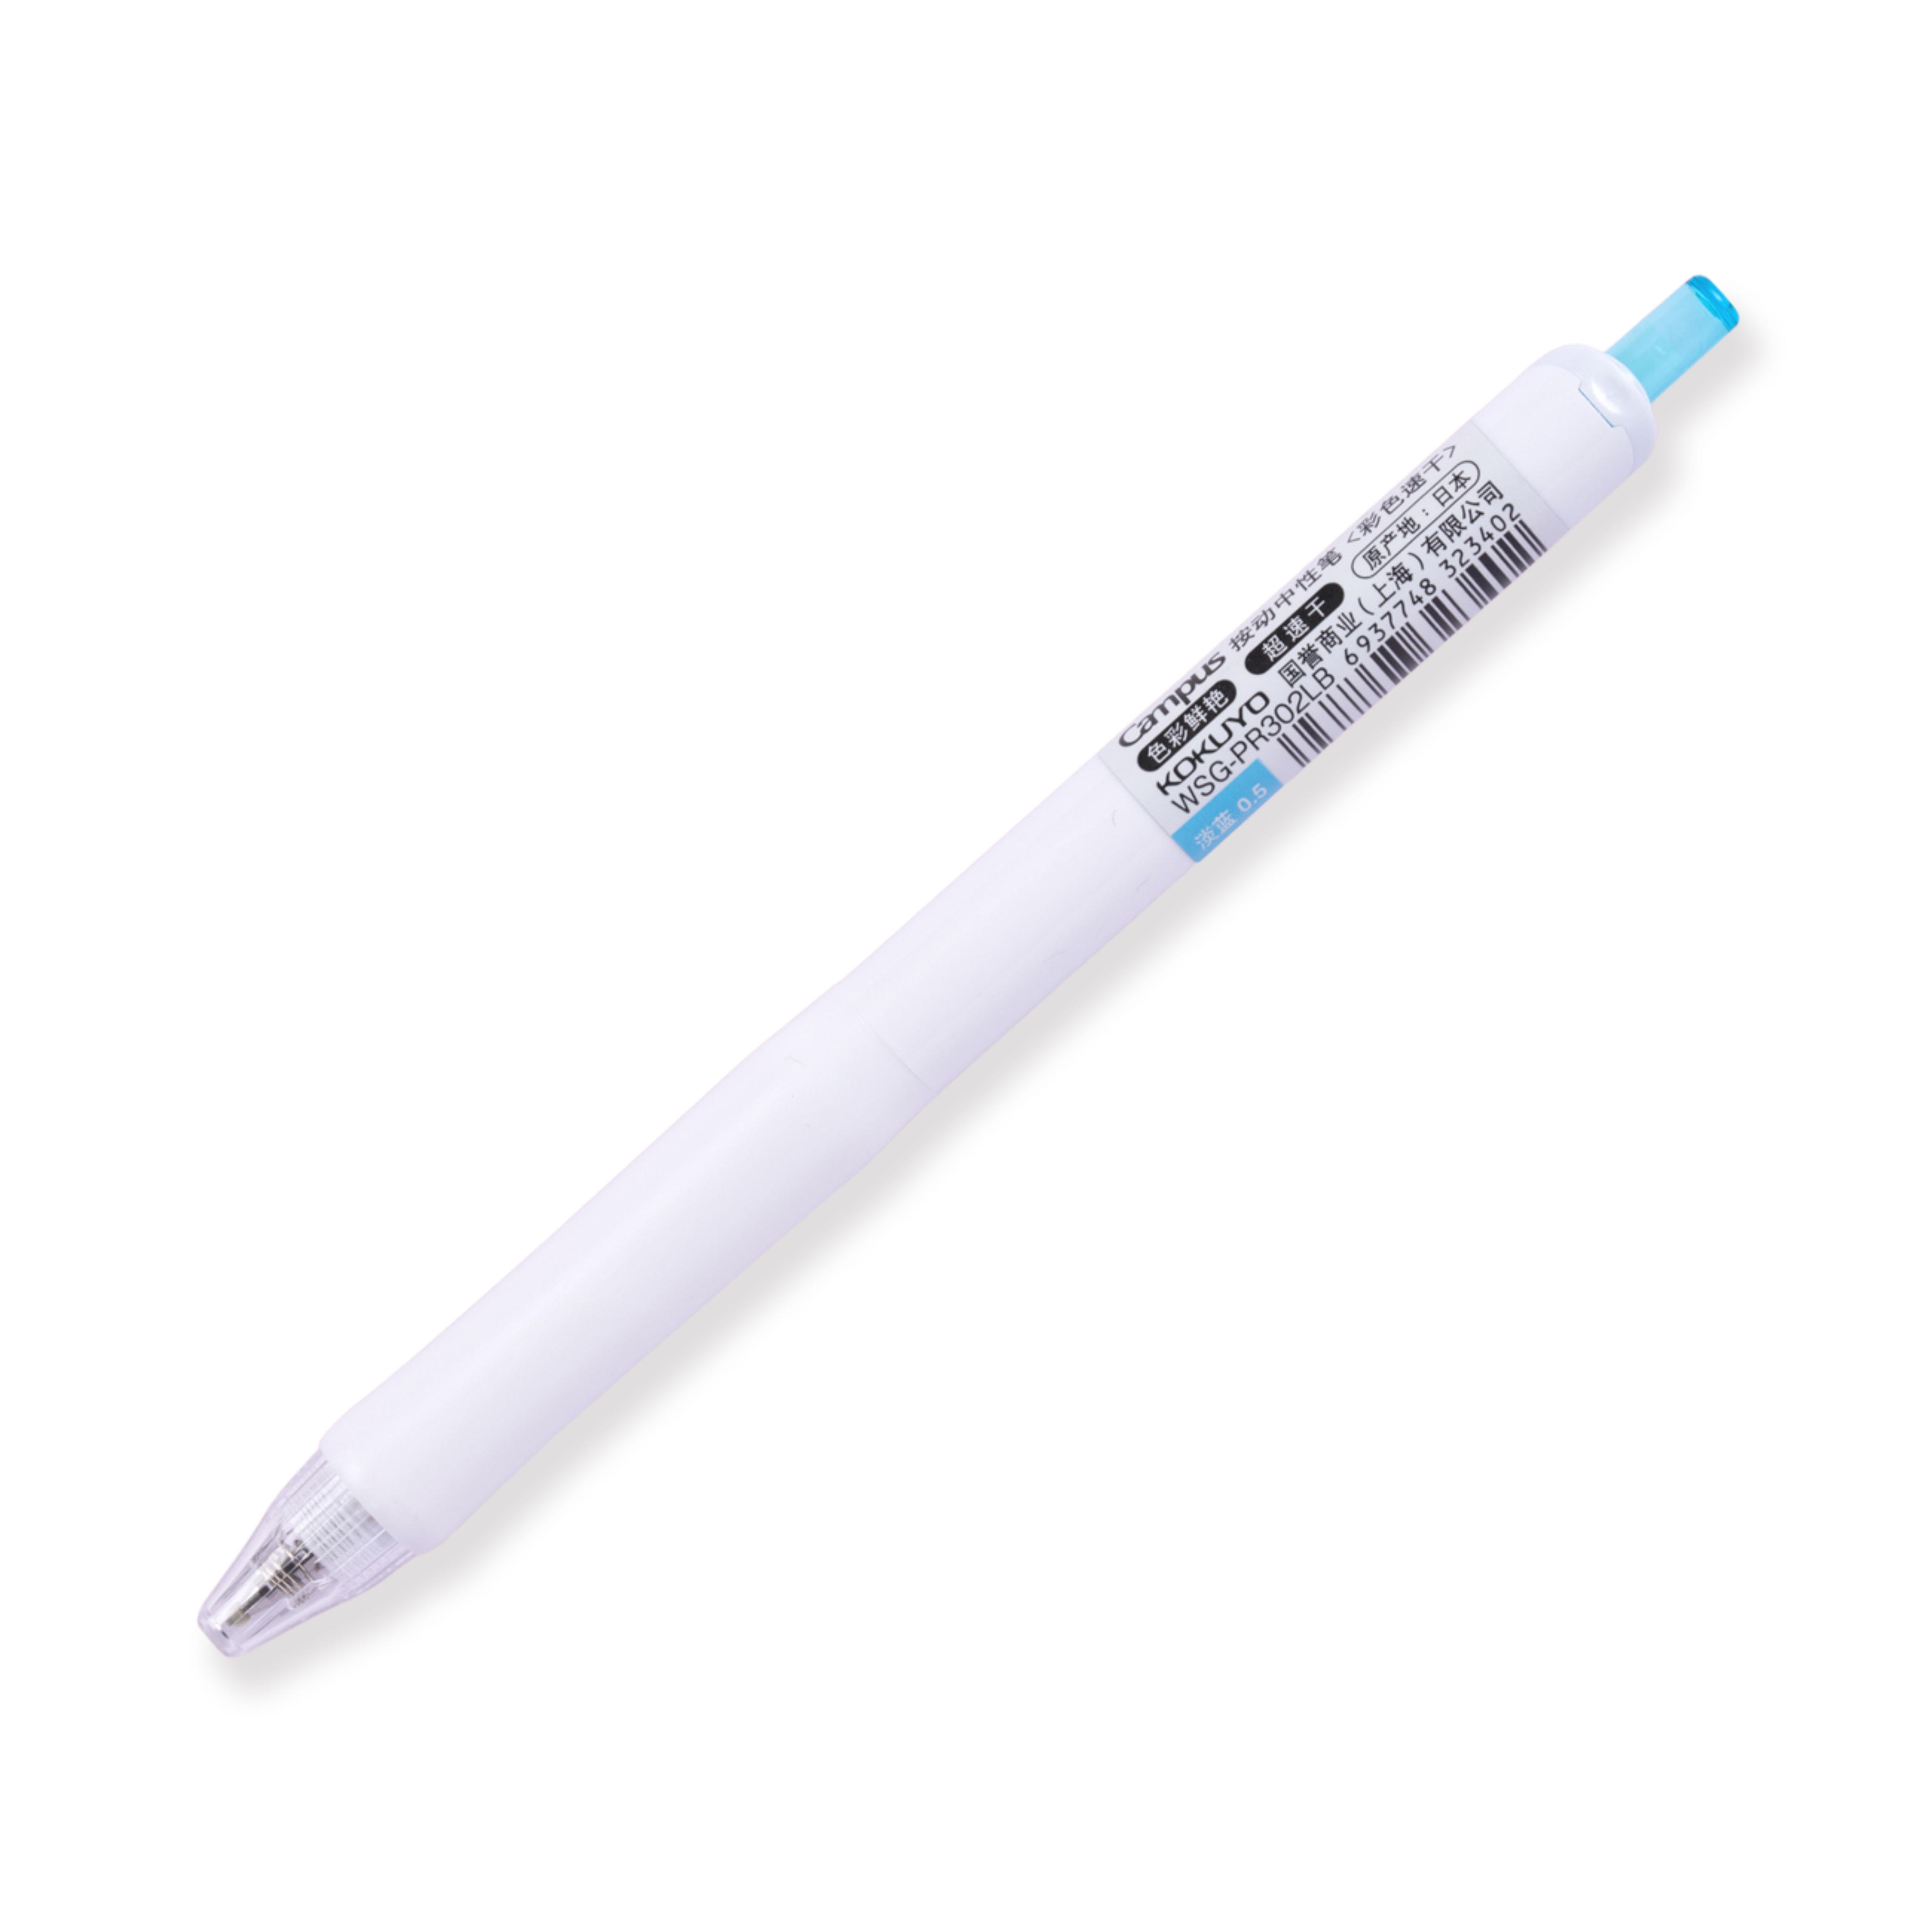 Kokuyo Campus viviDRY Retractable Gel Pen - 0.5 mm - Light Blue